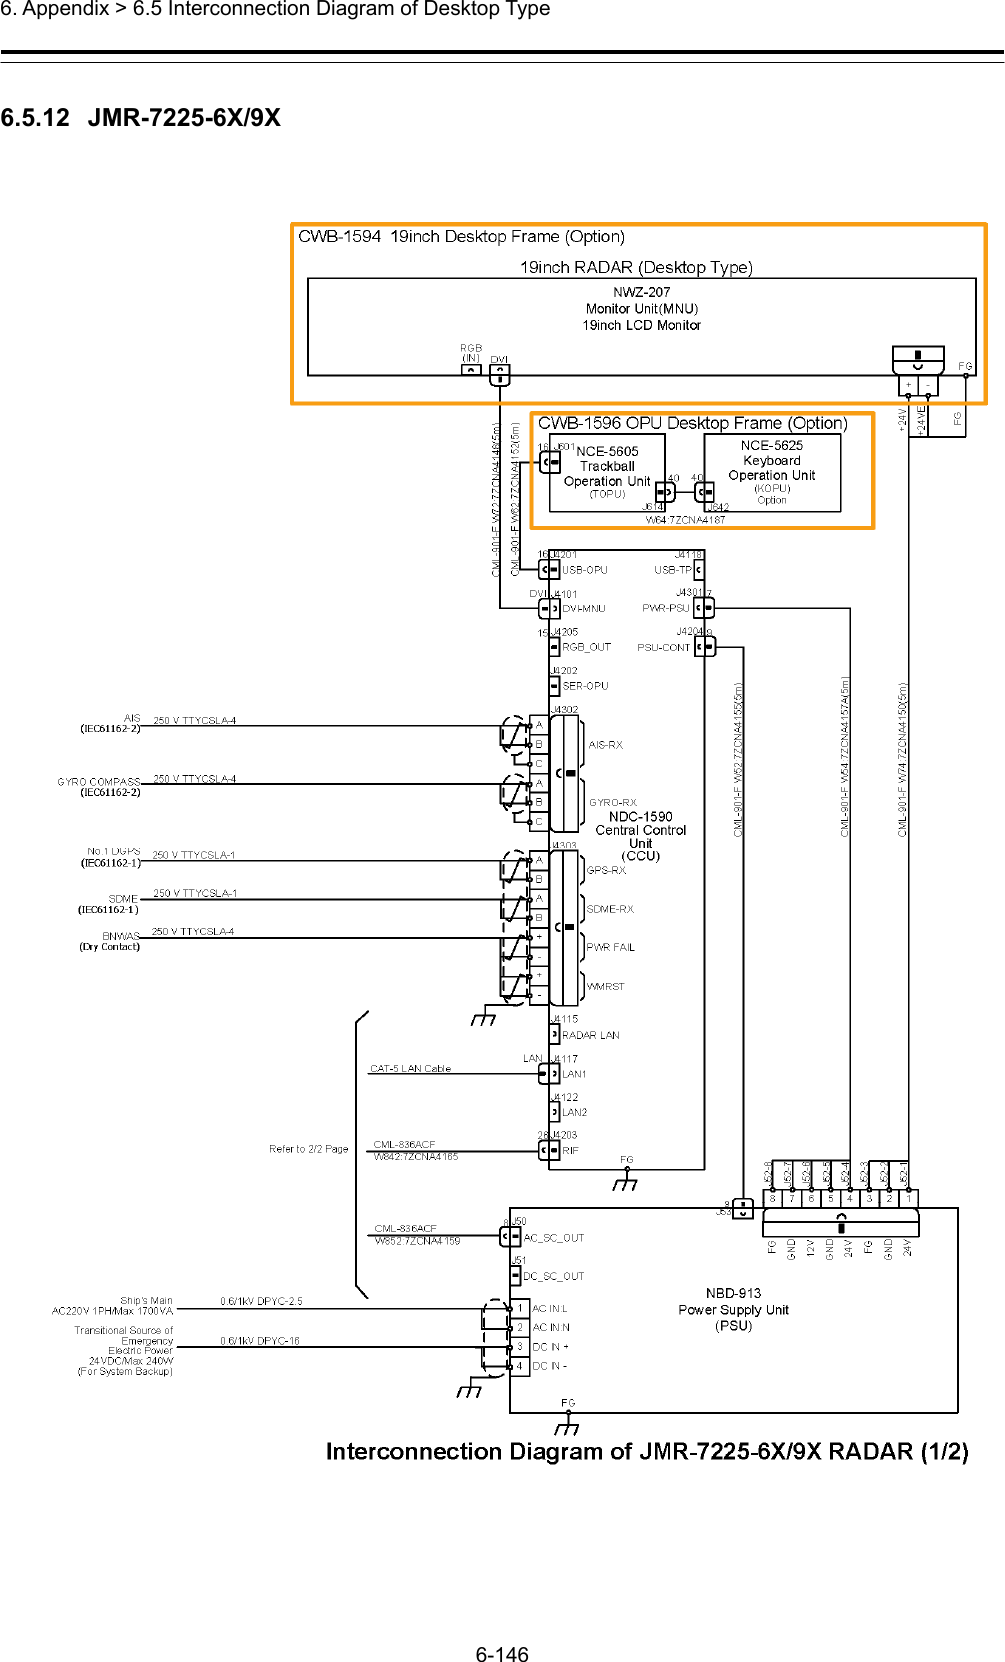  6. Appendix &gt; 6.5 Interconnection Diagram of Desktop Type 6-146  6.5.12  JMR-7225-6X/9X  